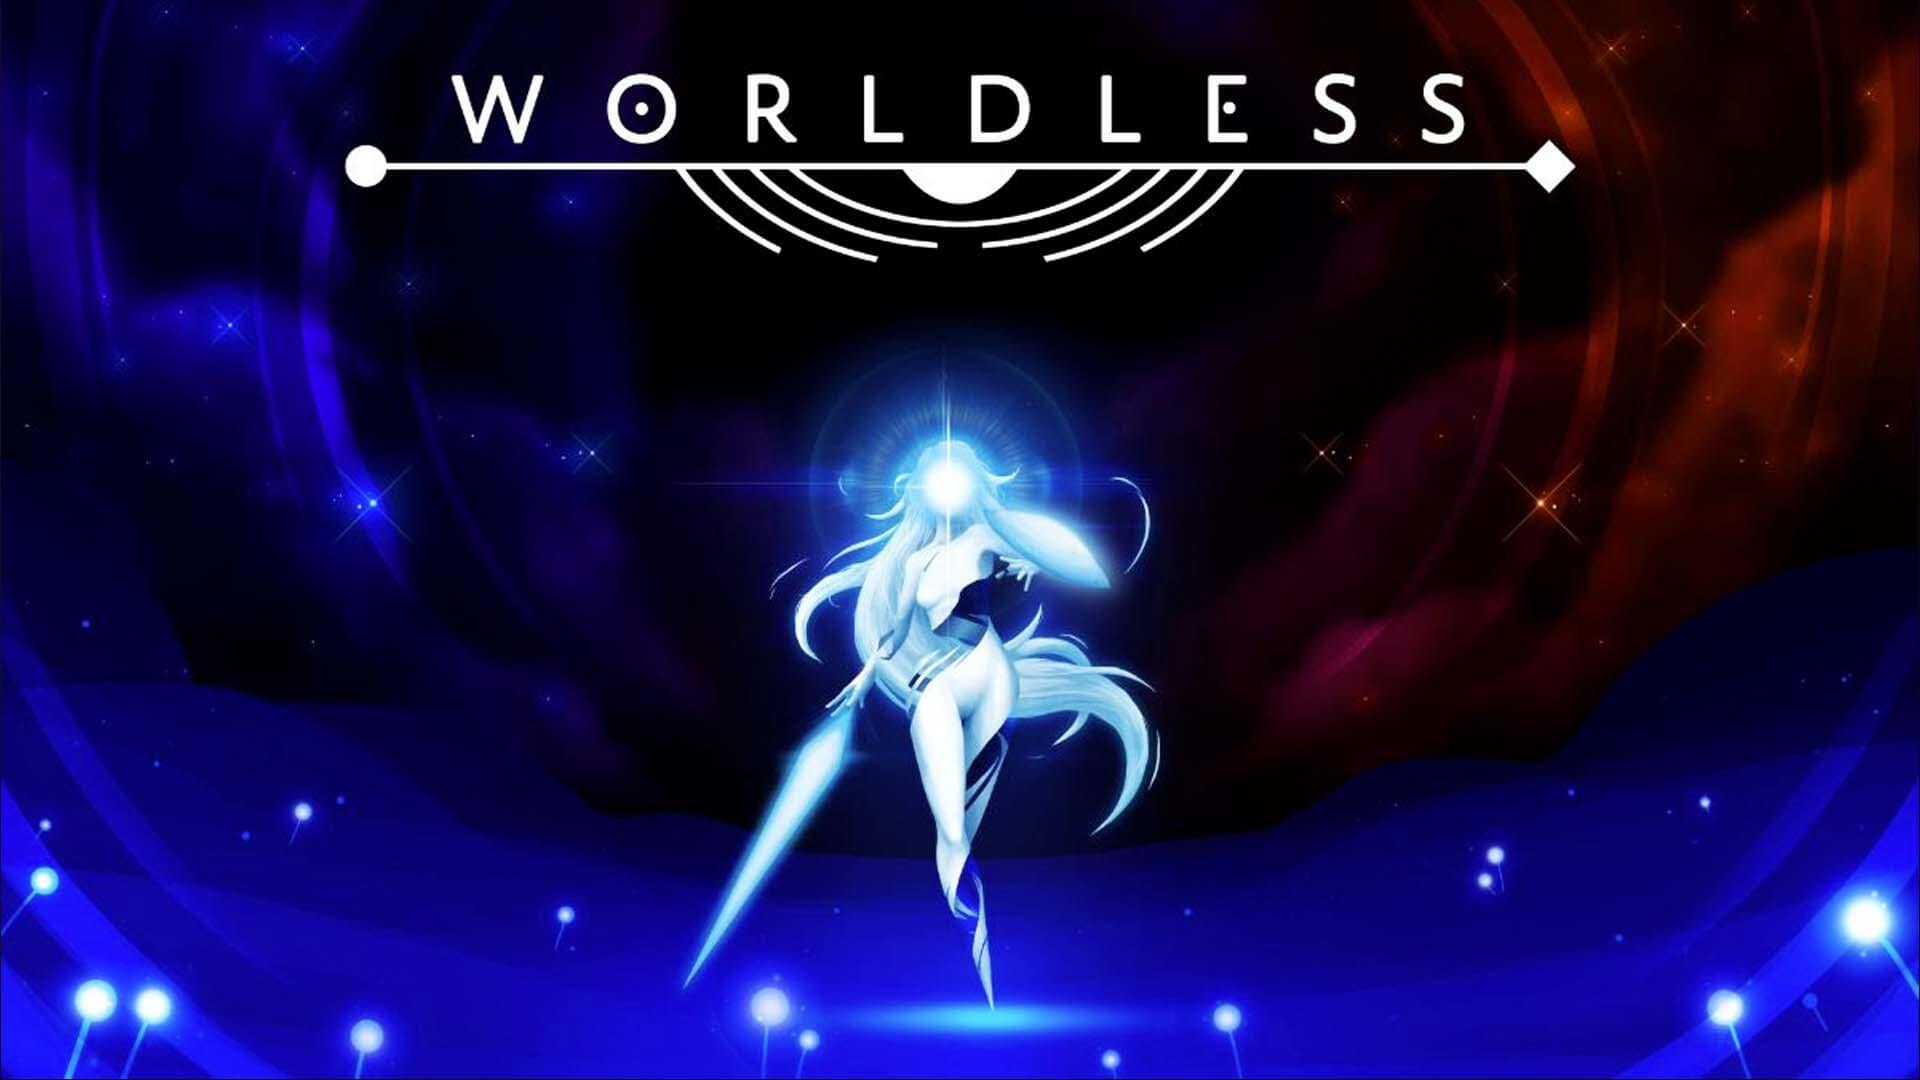 worldless-cover.jpg